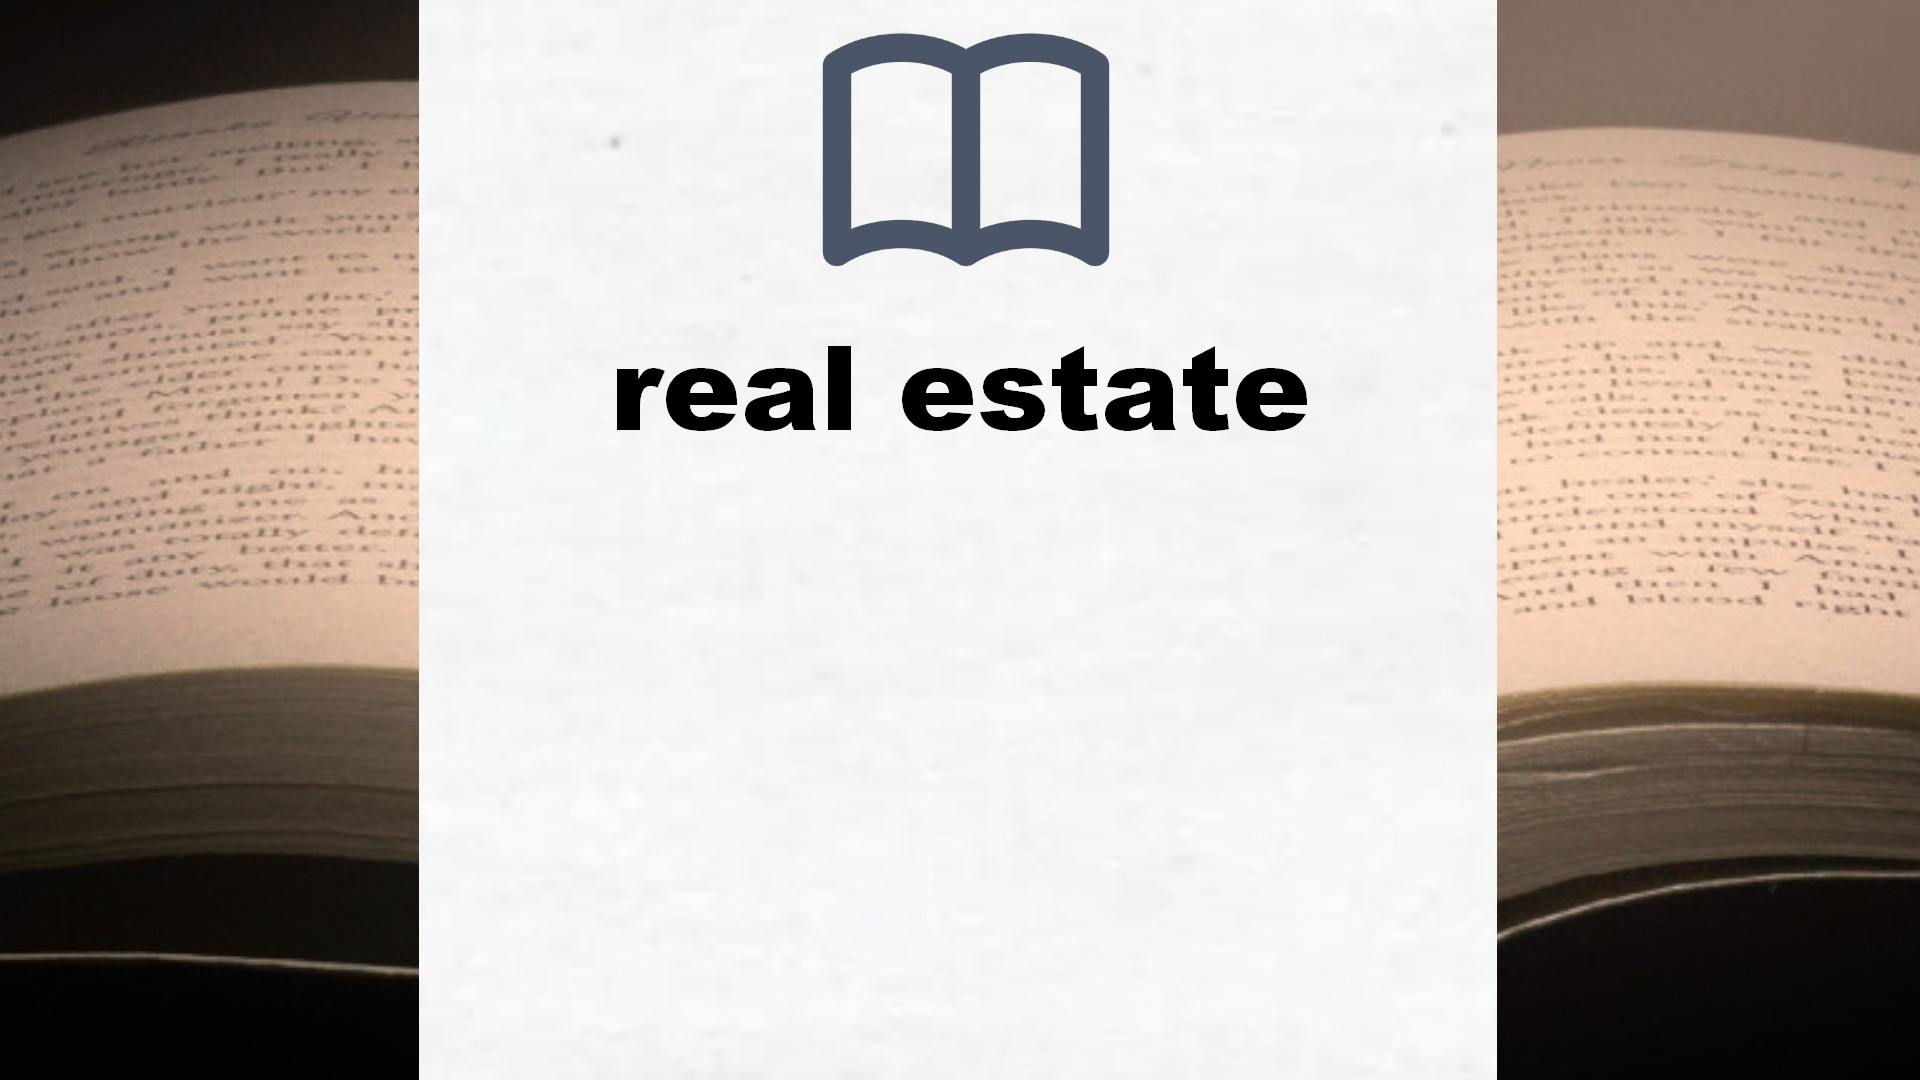 Libros sobre real estate